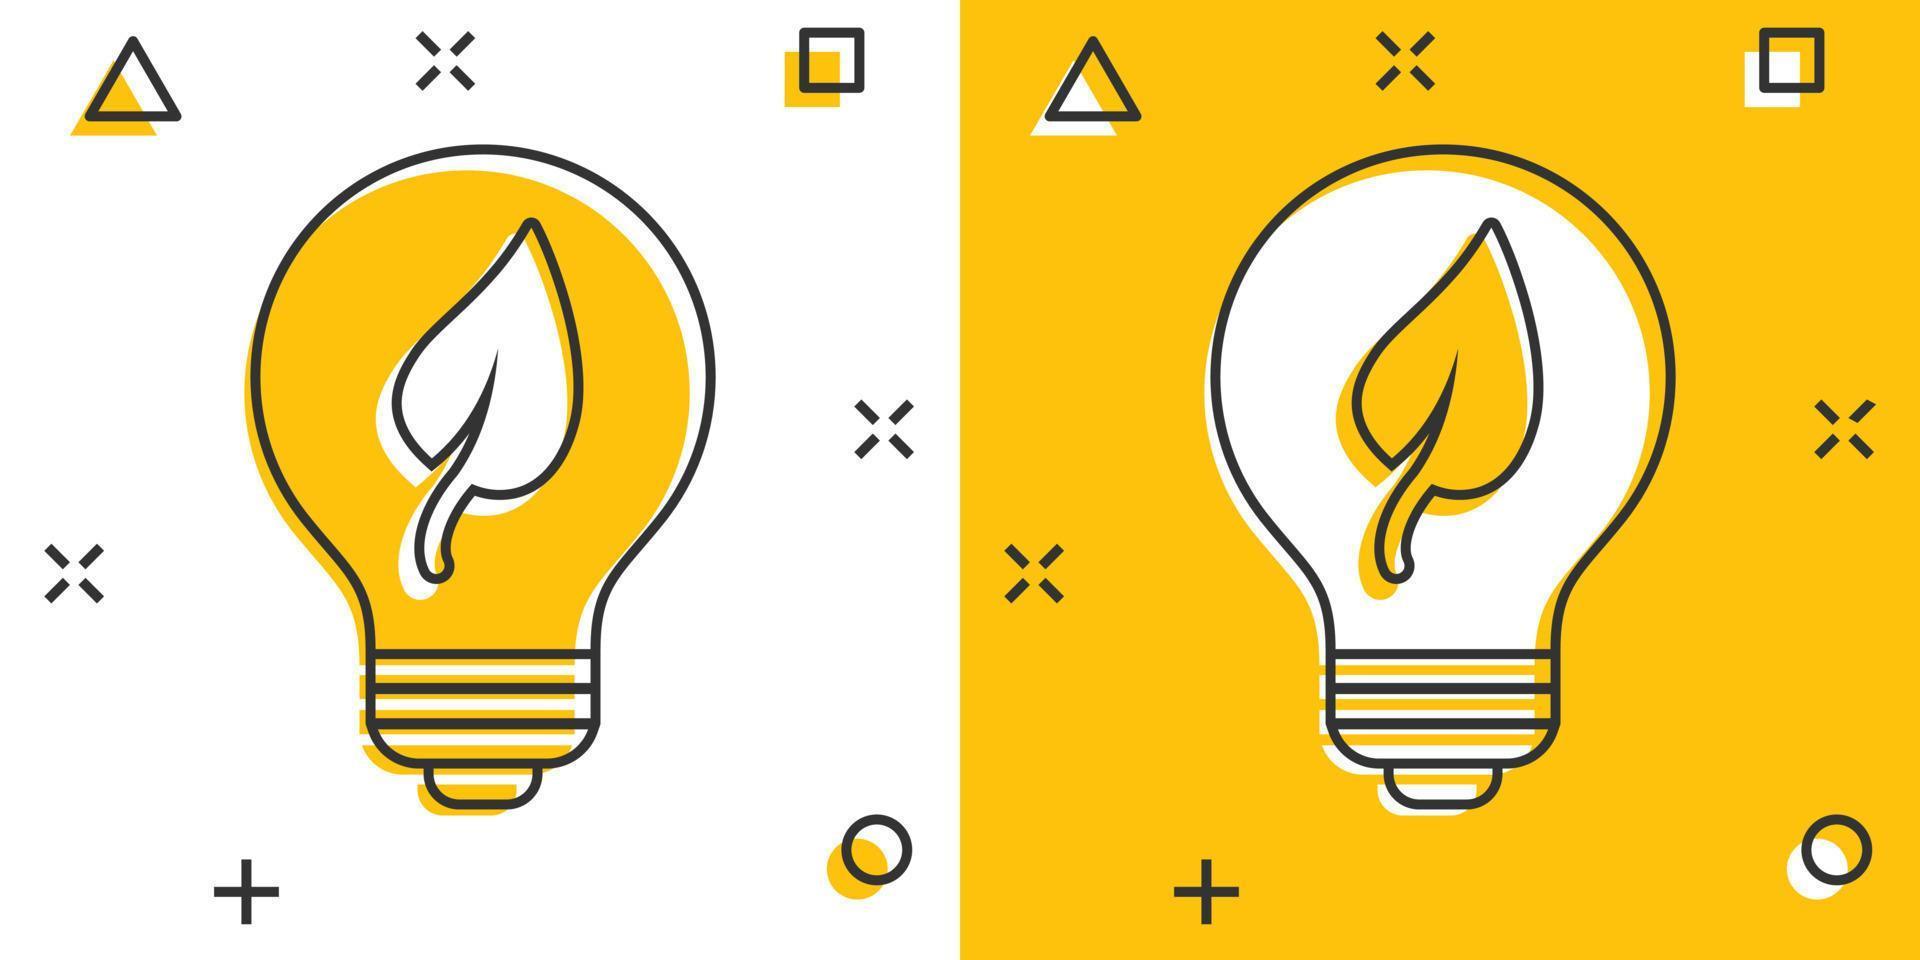 ícone de lâmpada em estilo cômico. ilustração em vetor lâmpada dos desenhos animados em fundo branco isolado. conceito de negócio de sinal de efeito de respingo de lâmpada de energia.